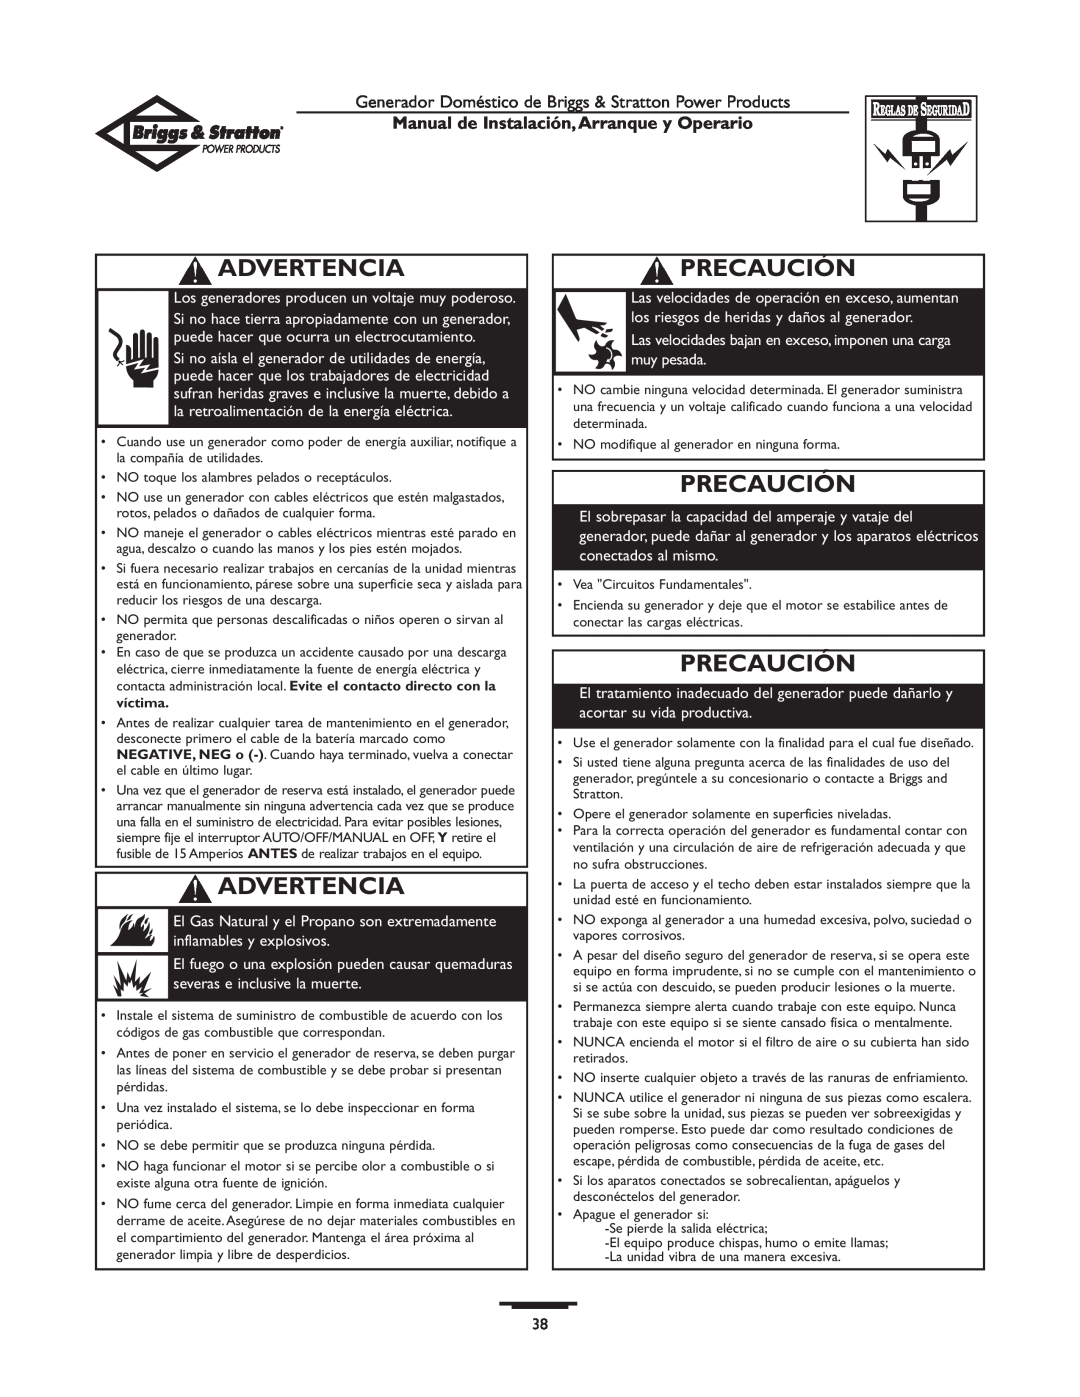 Briggs & Stratton 01897-0 manual Precaución, Advertencia, Manual de Instalación,Arranque y Operario 